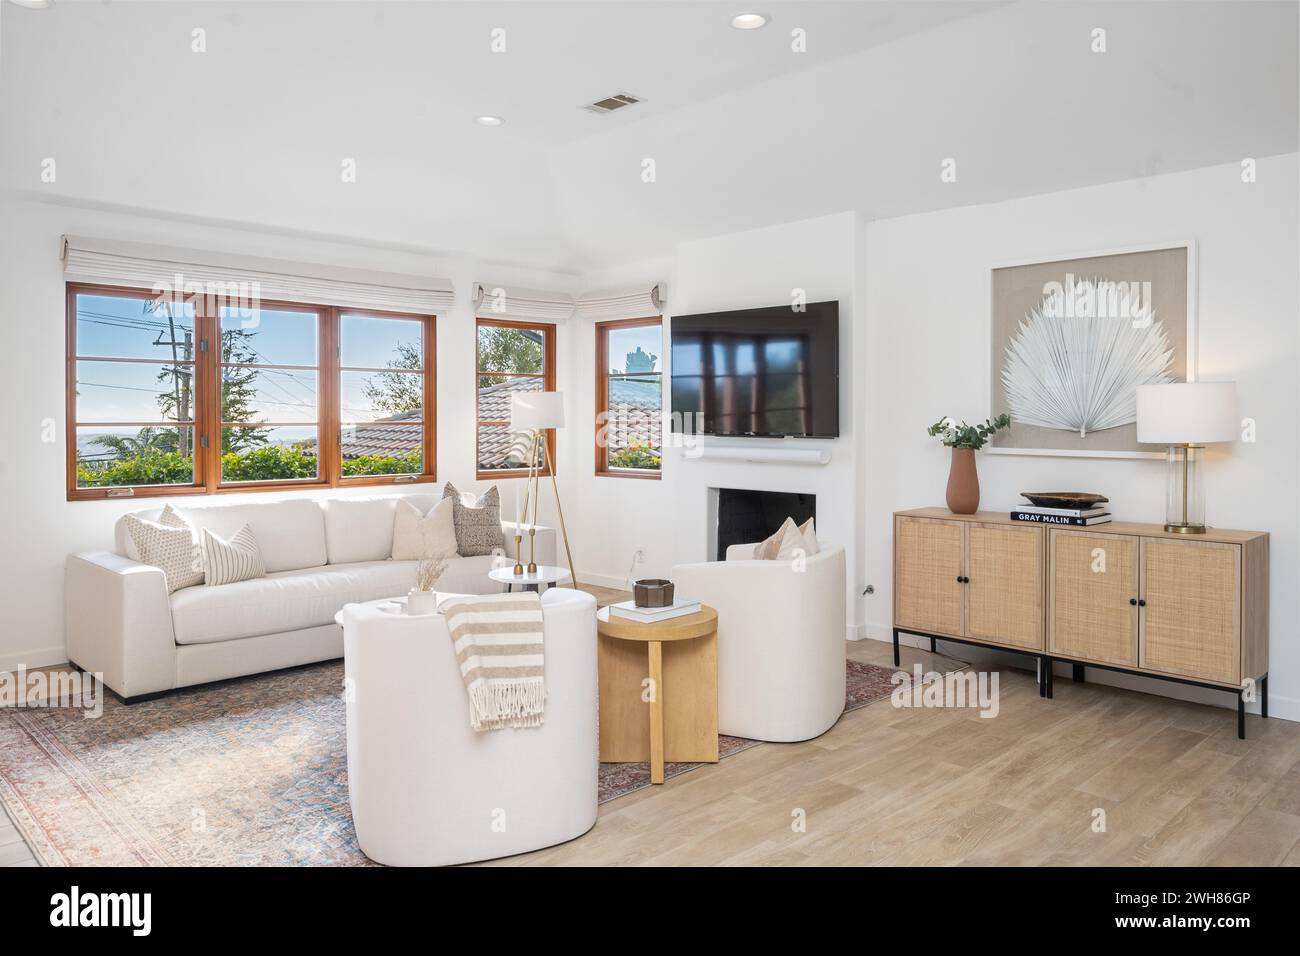 Spazioso soggiorno con pavimenti in legno duro, ampie finestre, eleganti divani bianchi e moderno tavolino da caffè Foto Stock